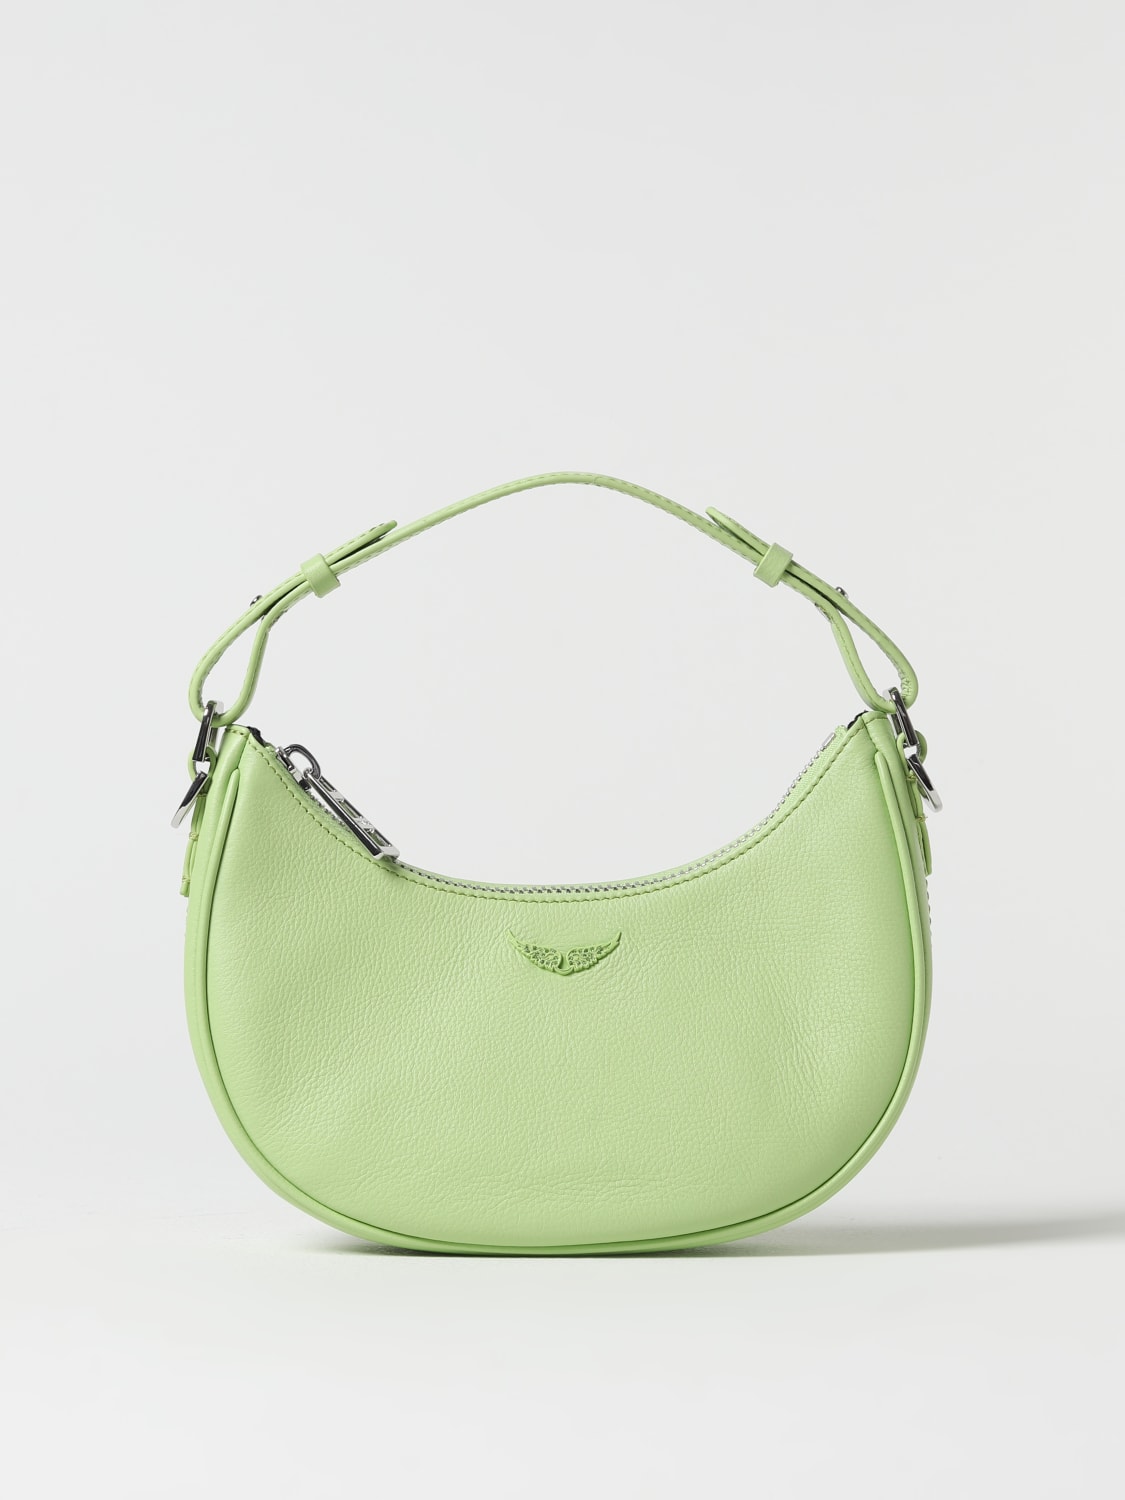 Zadig & Voltaire Green Leather Zipper Top Shoulder Bag